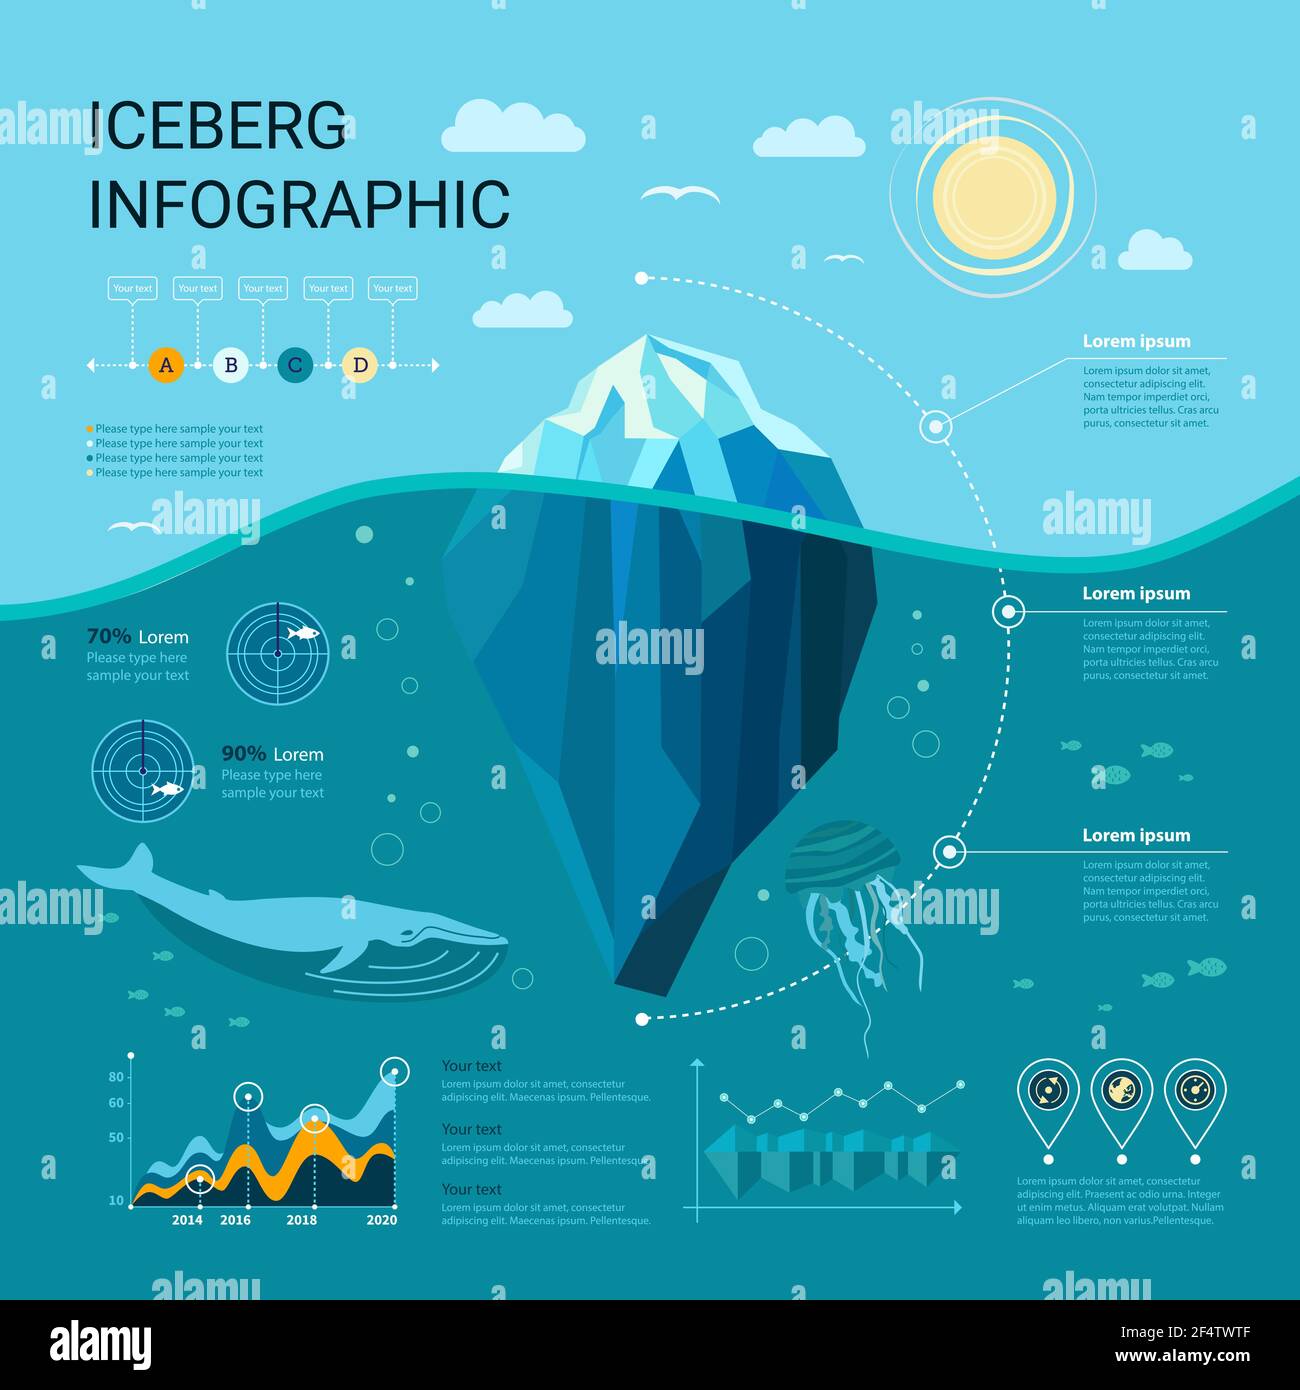 Infografiche di iceberg con elementi di ghiaccio, acqua, mare, grafica e modelli. Infografica subacquea Illustrazione Vettoriale